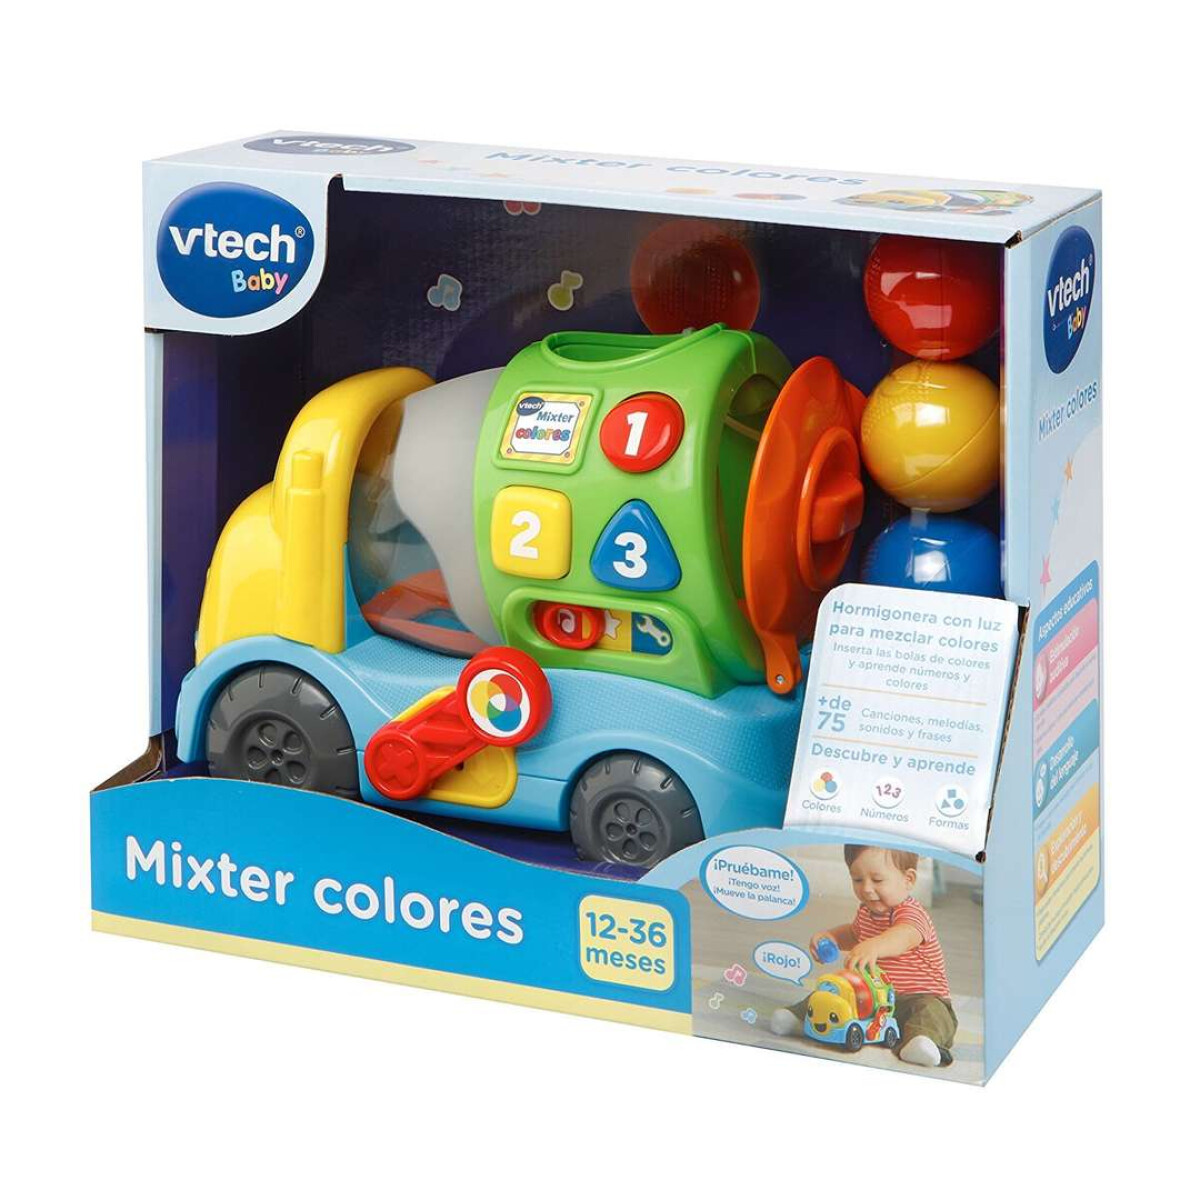 Camión Didáctico Vtech Mixter Colores - 001 